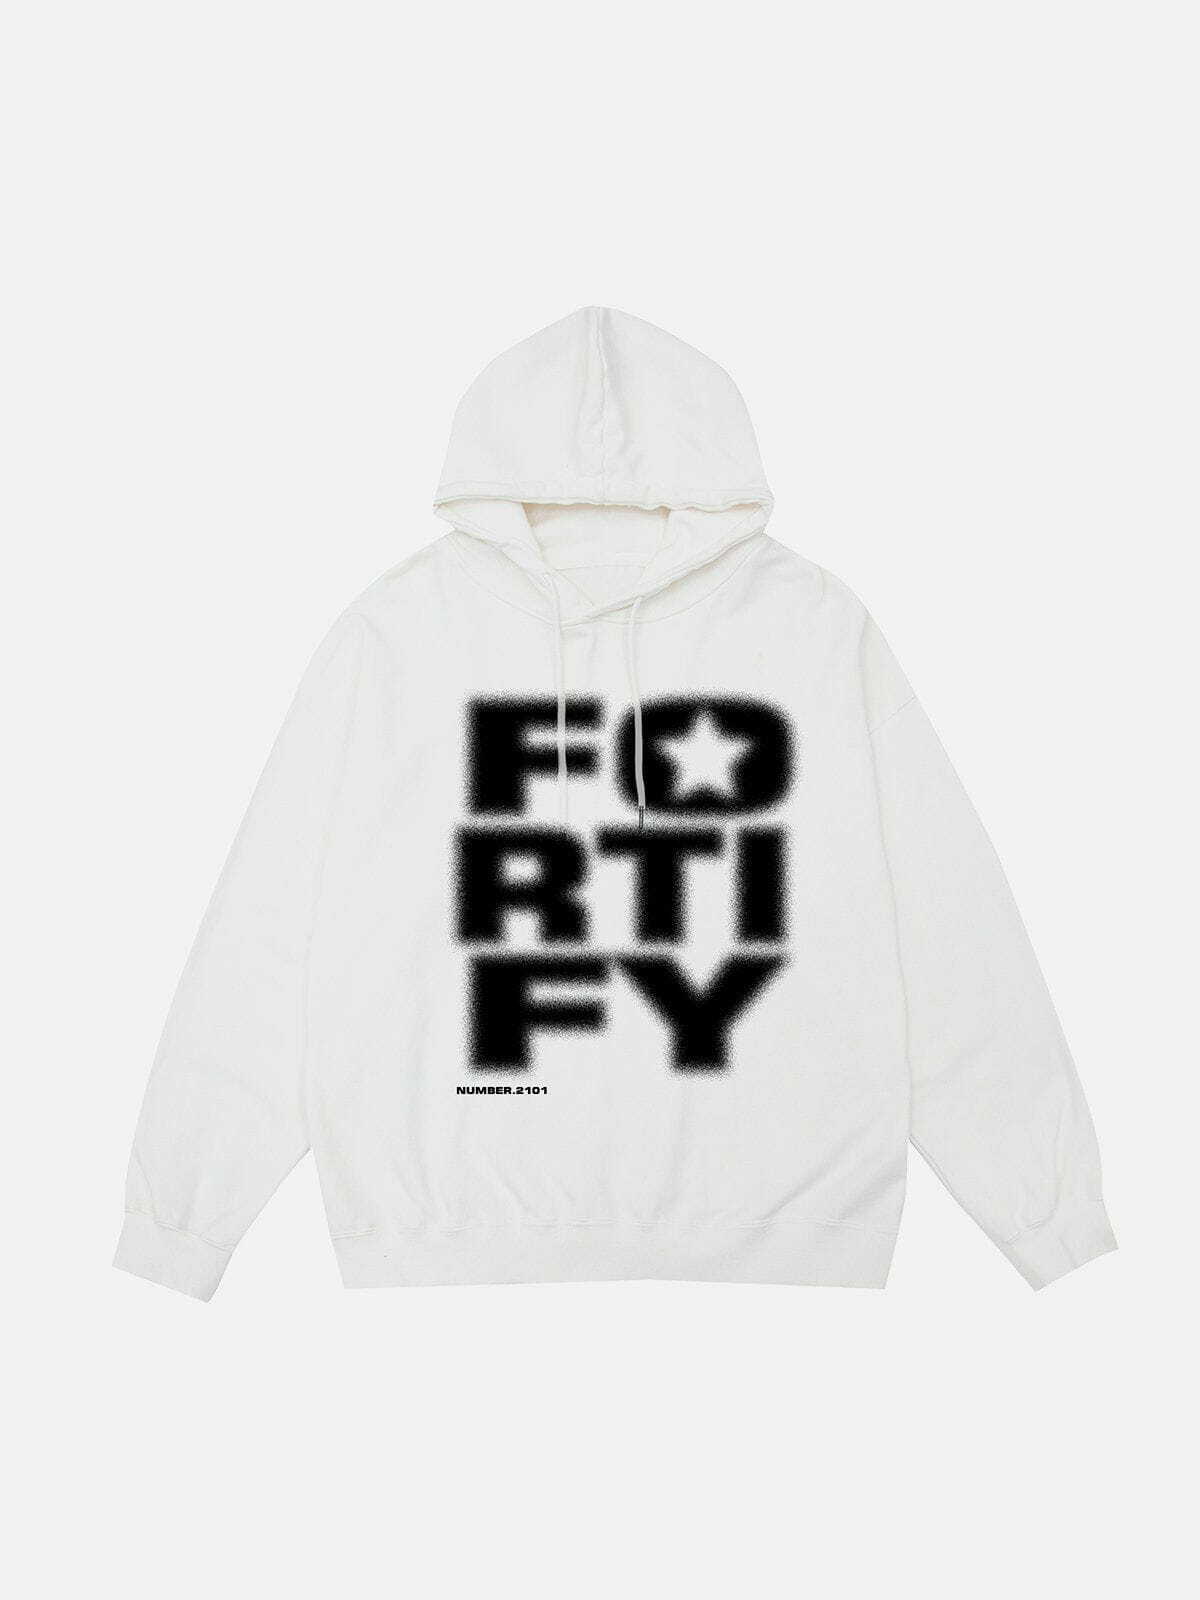 fortify' hoodie edgy & dynamic streetwear 2899